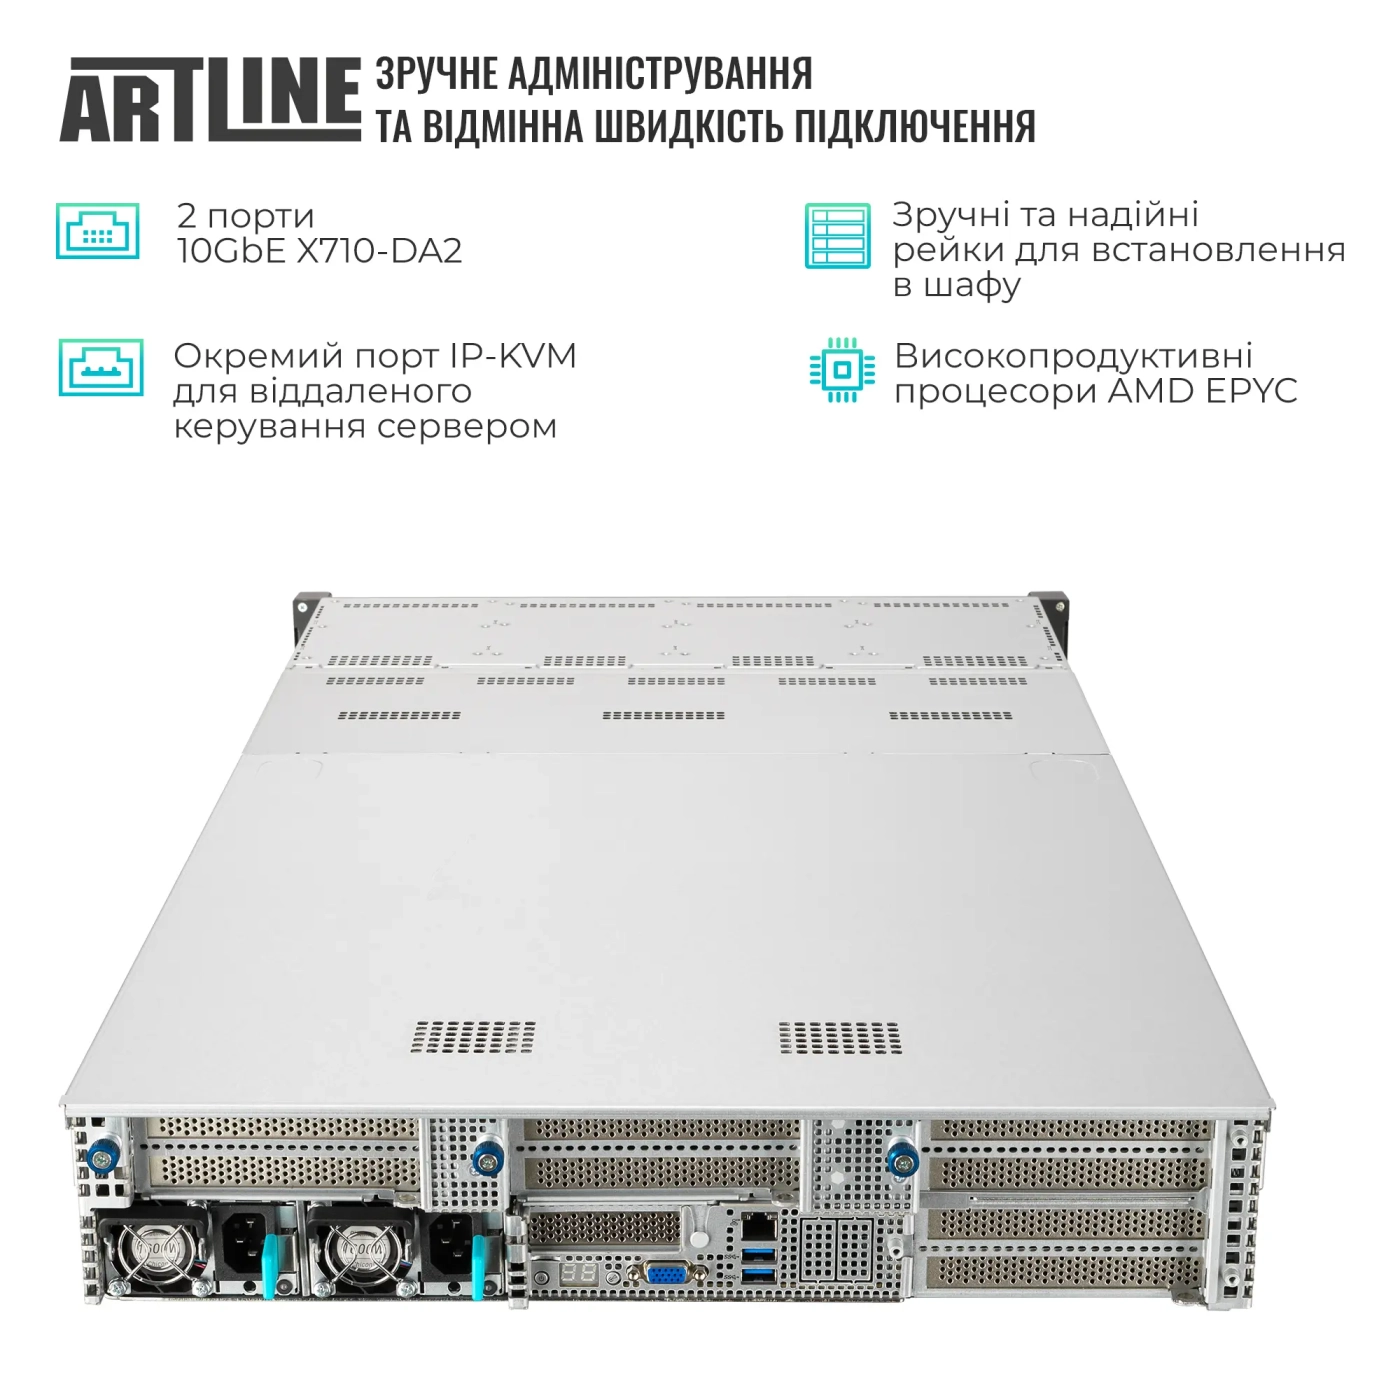 Купить Сервер ARTLINE Business R85 (R85v01) - фото 2